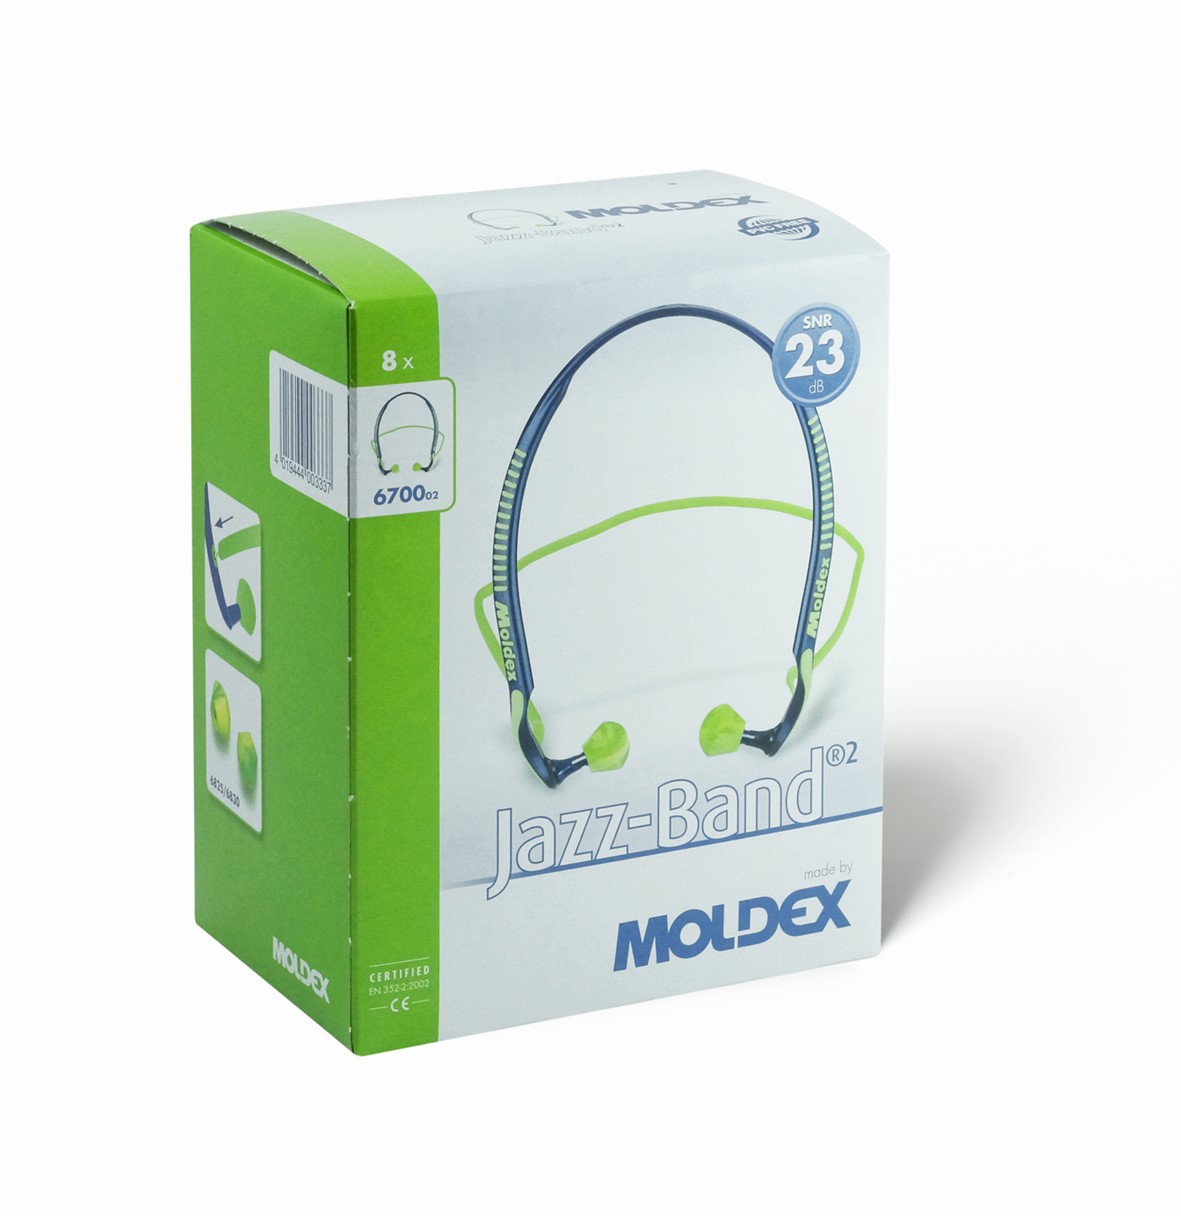 Moldex 6700 Jazz Band Cable Ear Plugs